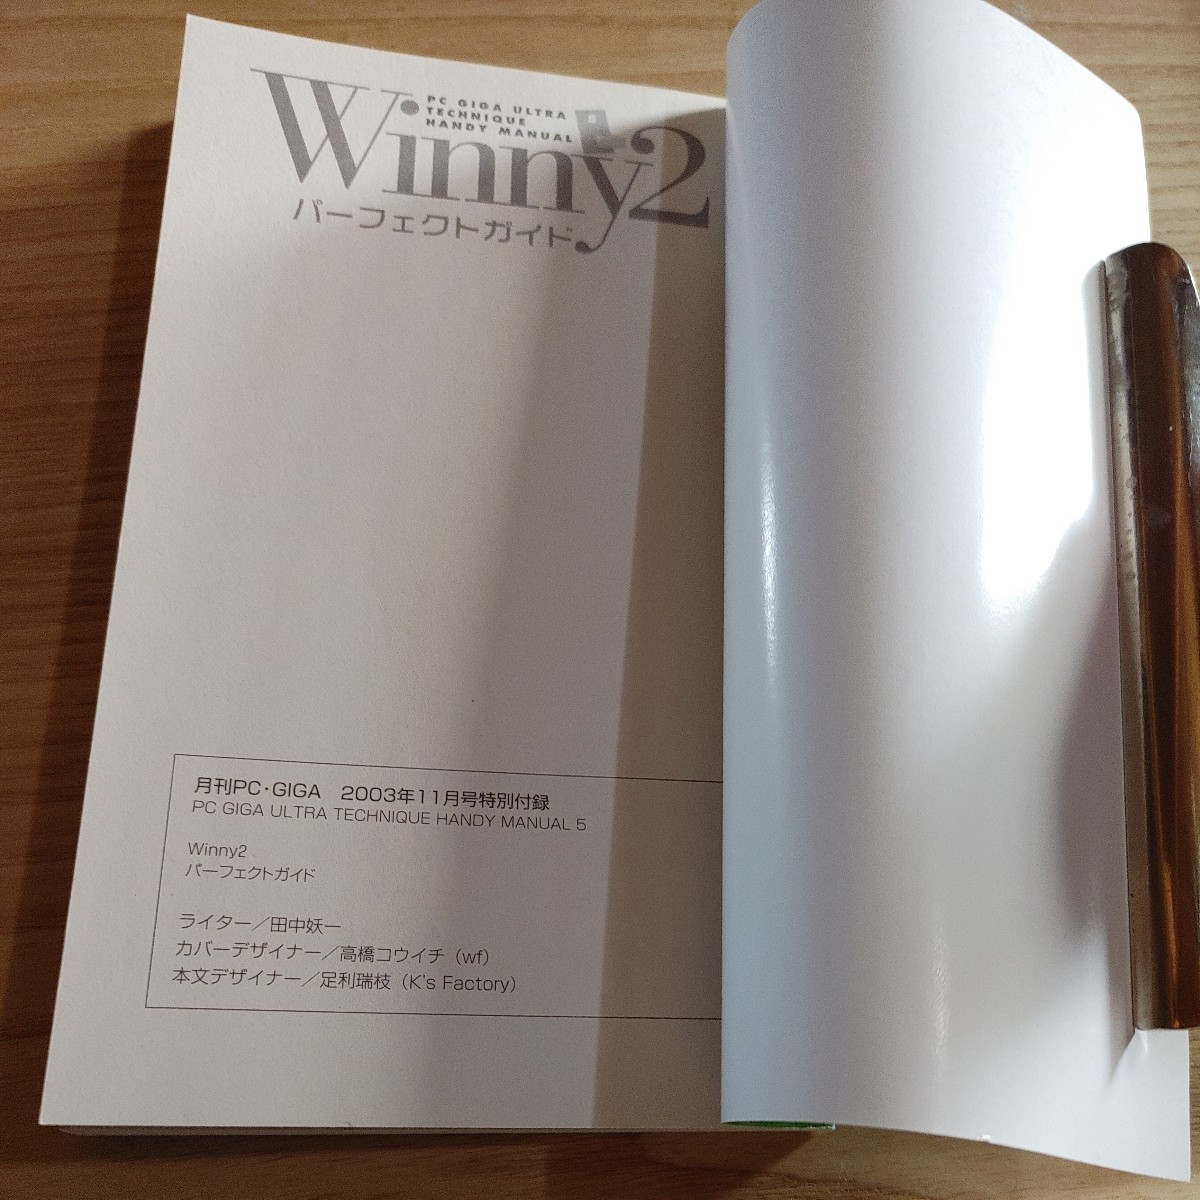 【古本雅】Winny2 パーフェクトガイド 月刊PC・GIGA 2003年11月号特別付録 PC GIGA ULTRA TECHNIQUE HANDY MANUAL_画像4